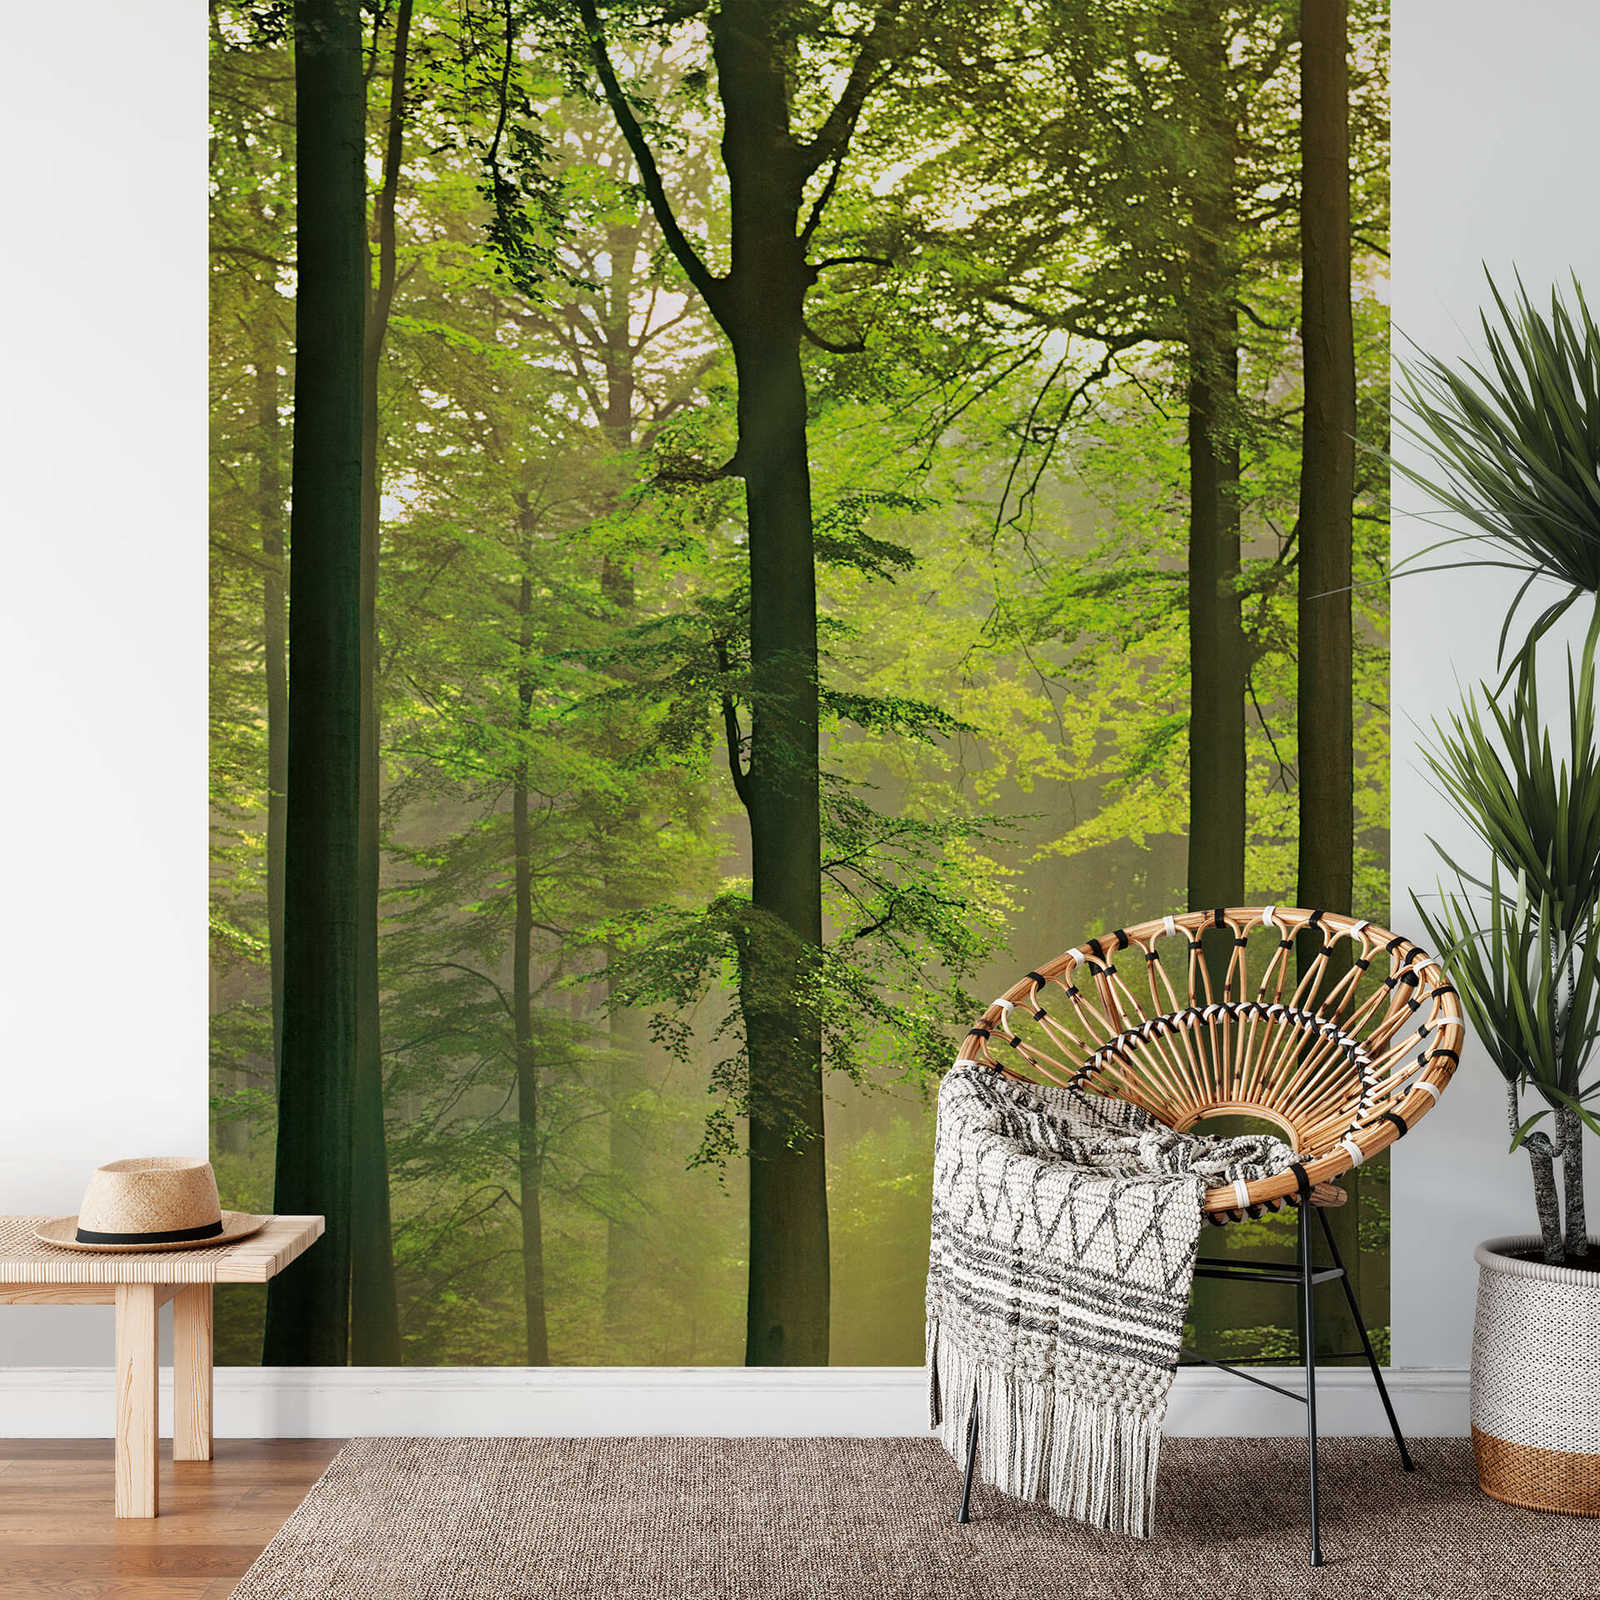             Photo wallpaper green forest motif in portrait format
        